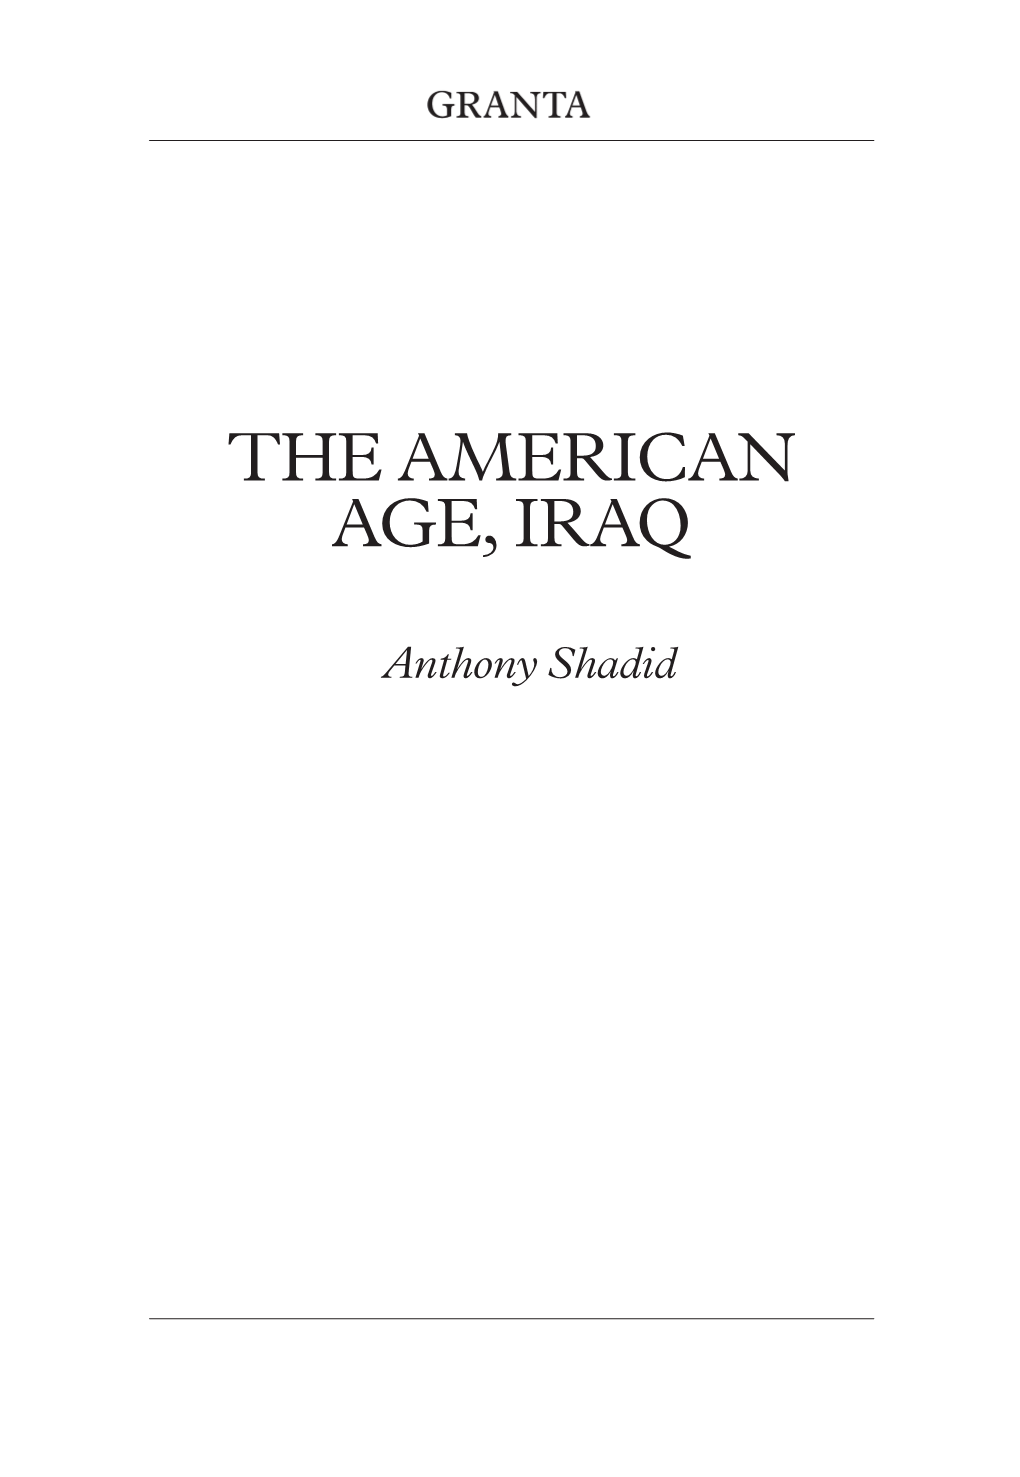 The American Age, Iraq